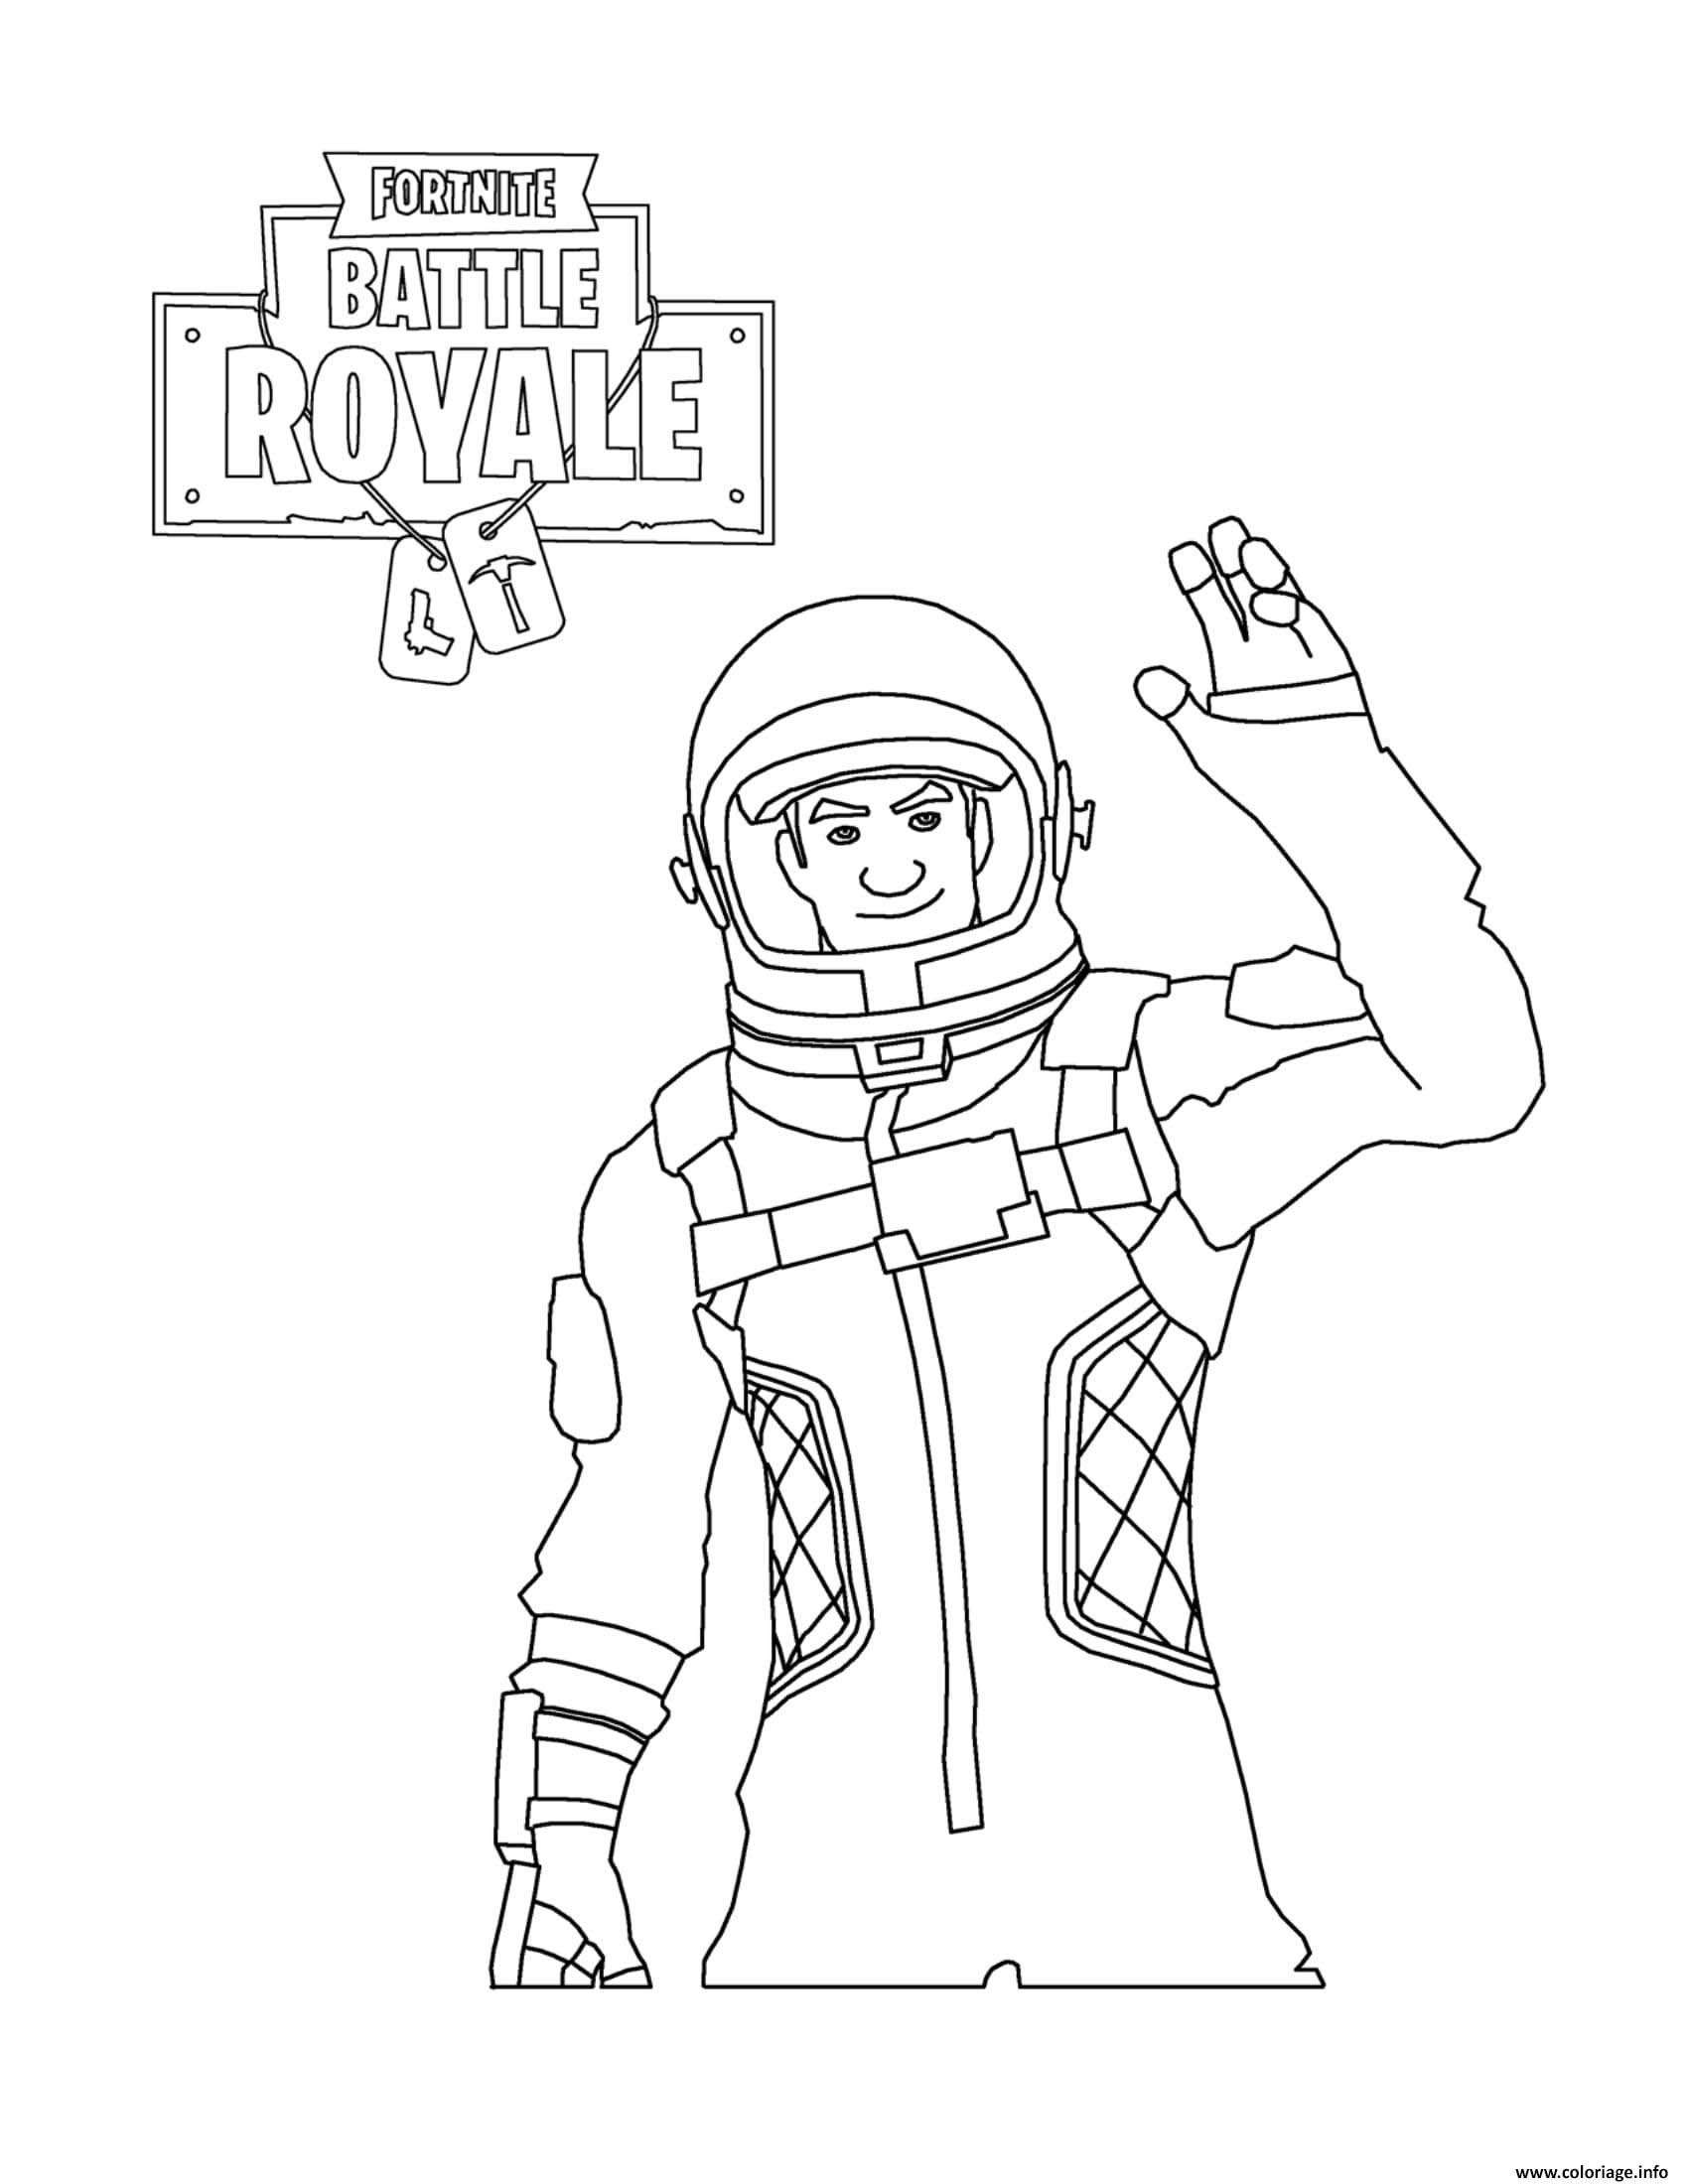 Páginas para colorear sencillas de Fortnite Battle Royale para niños